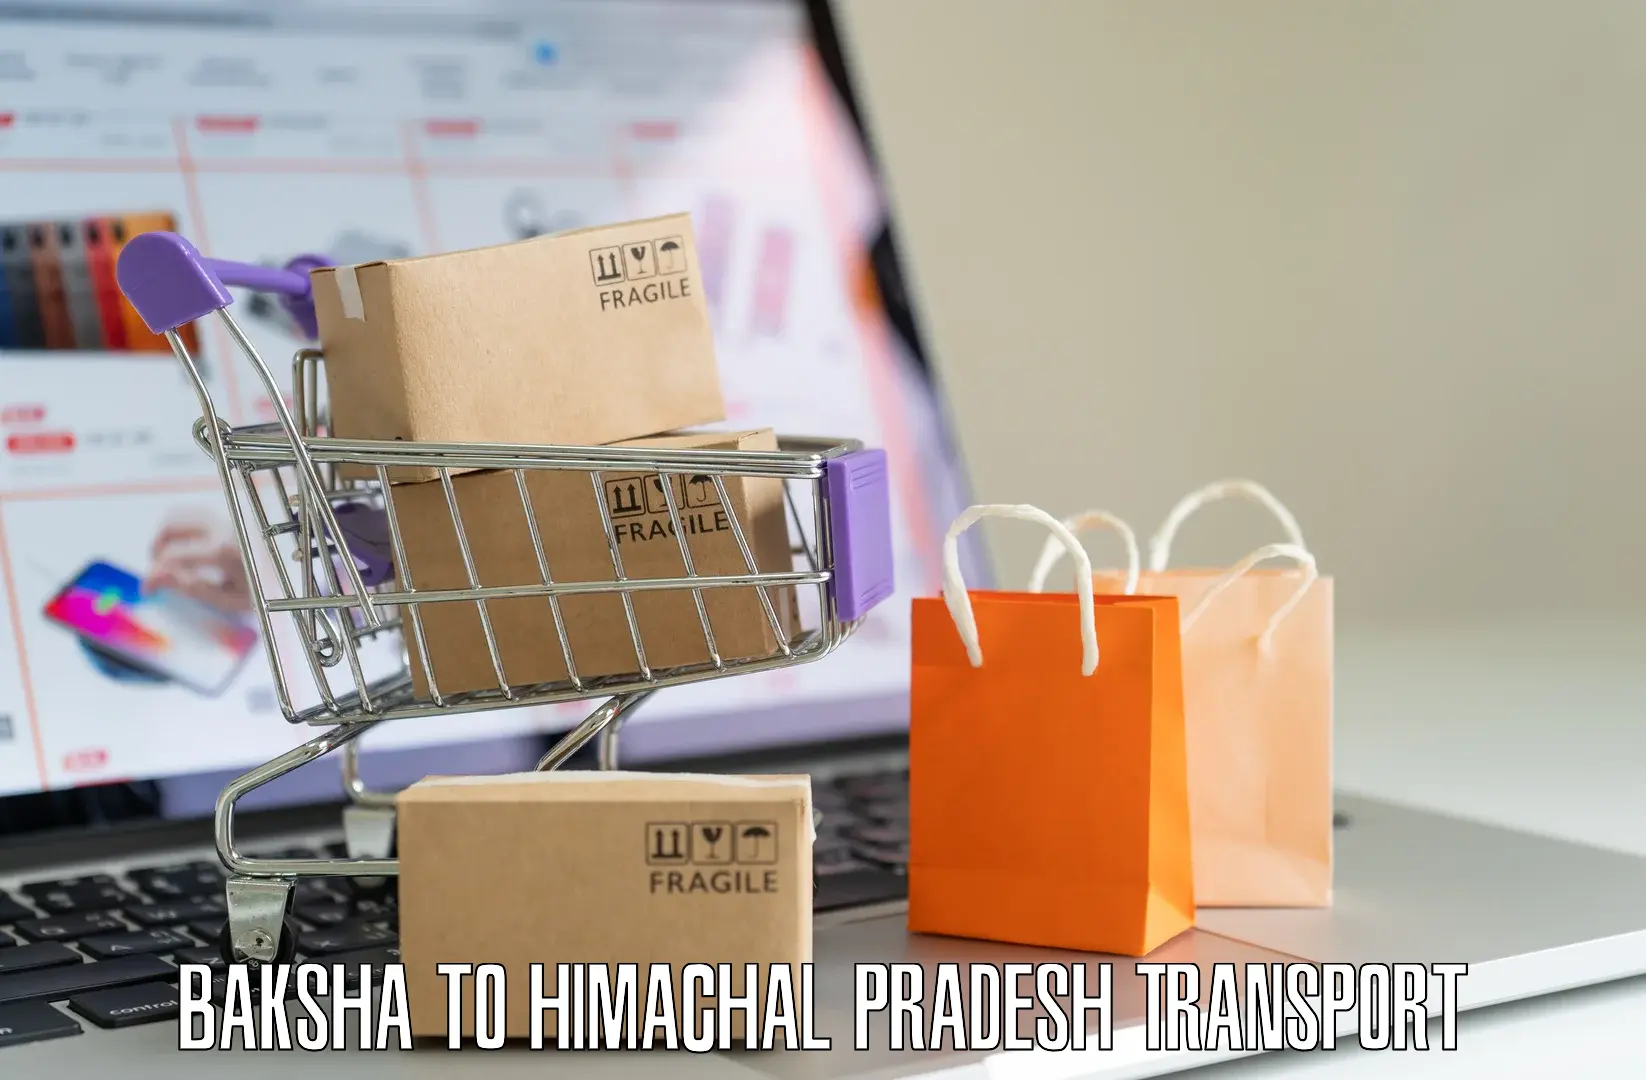 Road transport online services Baksha to Himachal Pradesh